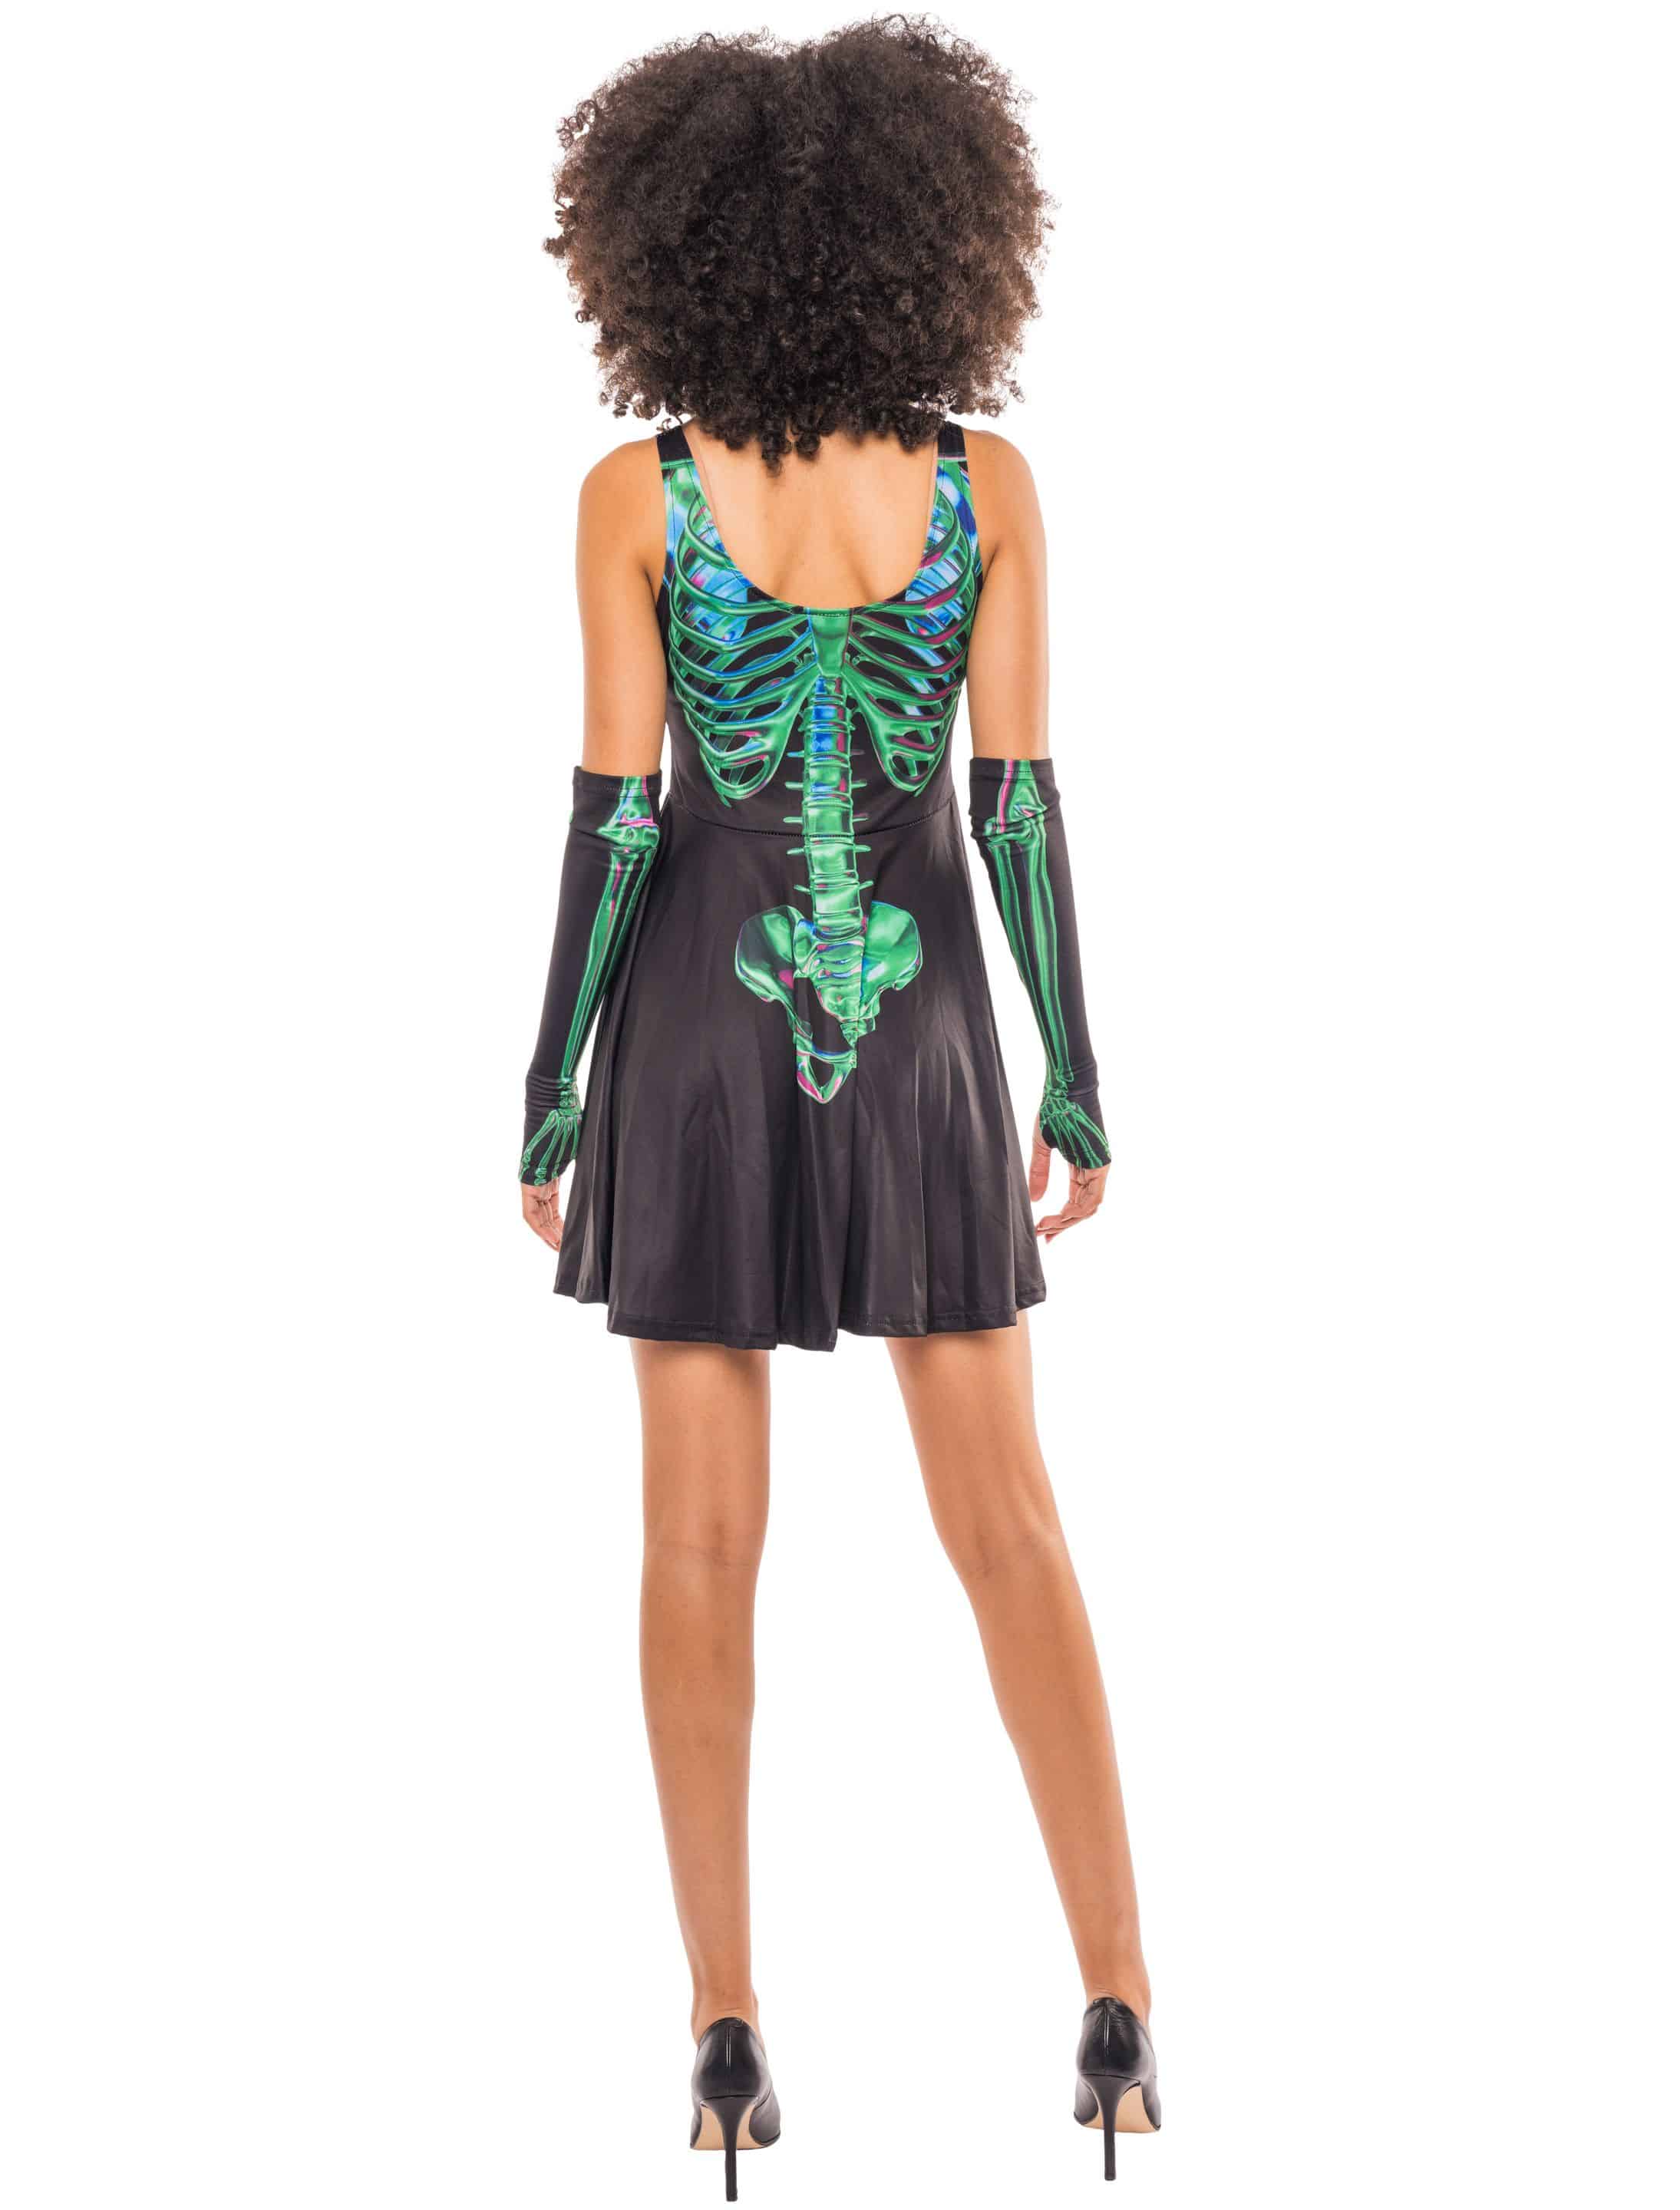 Trägerkleid Skelett mit Armstulpen Damen schwarz/grün L/XL